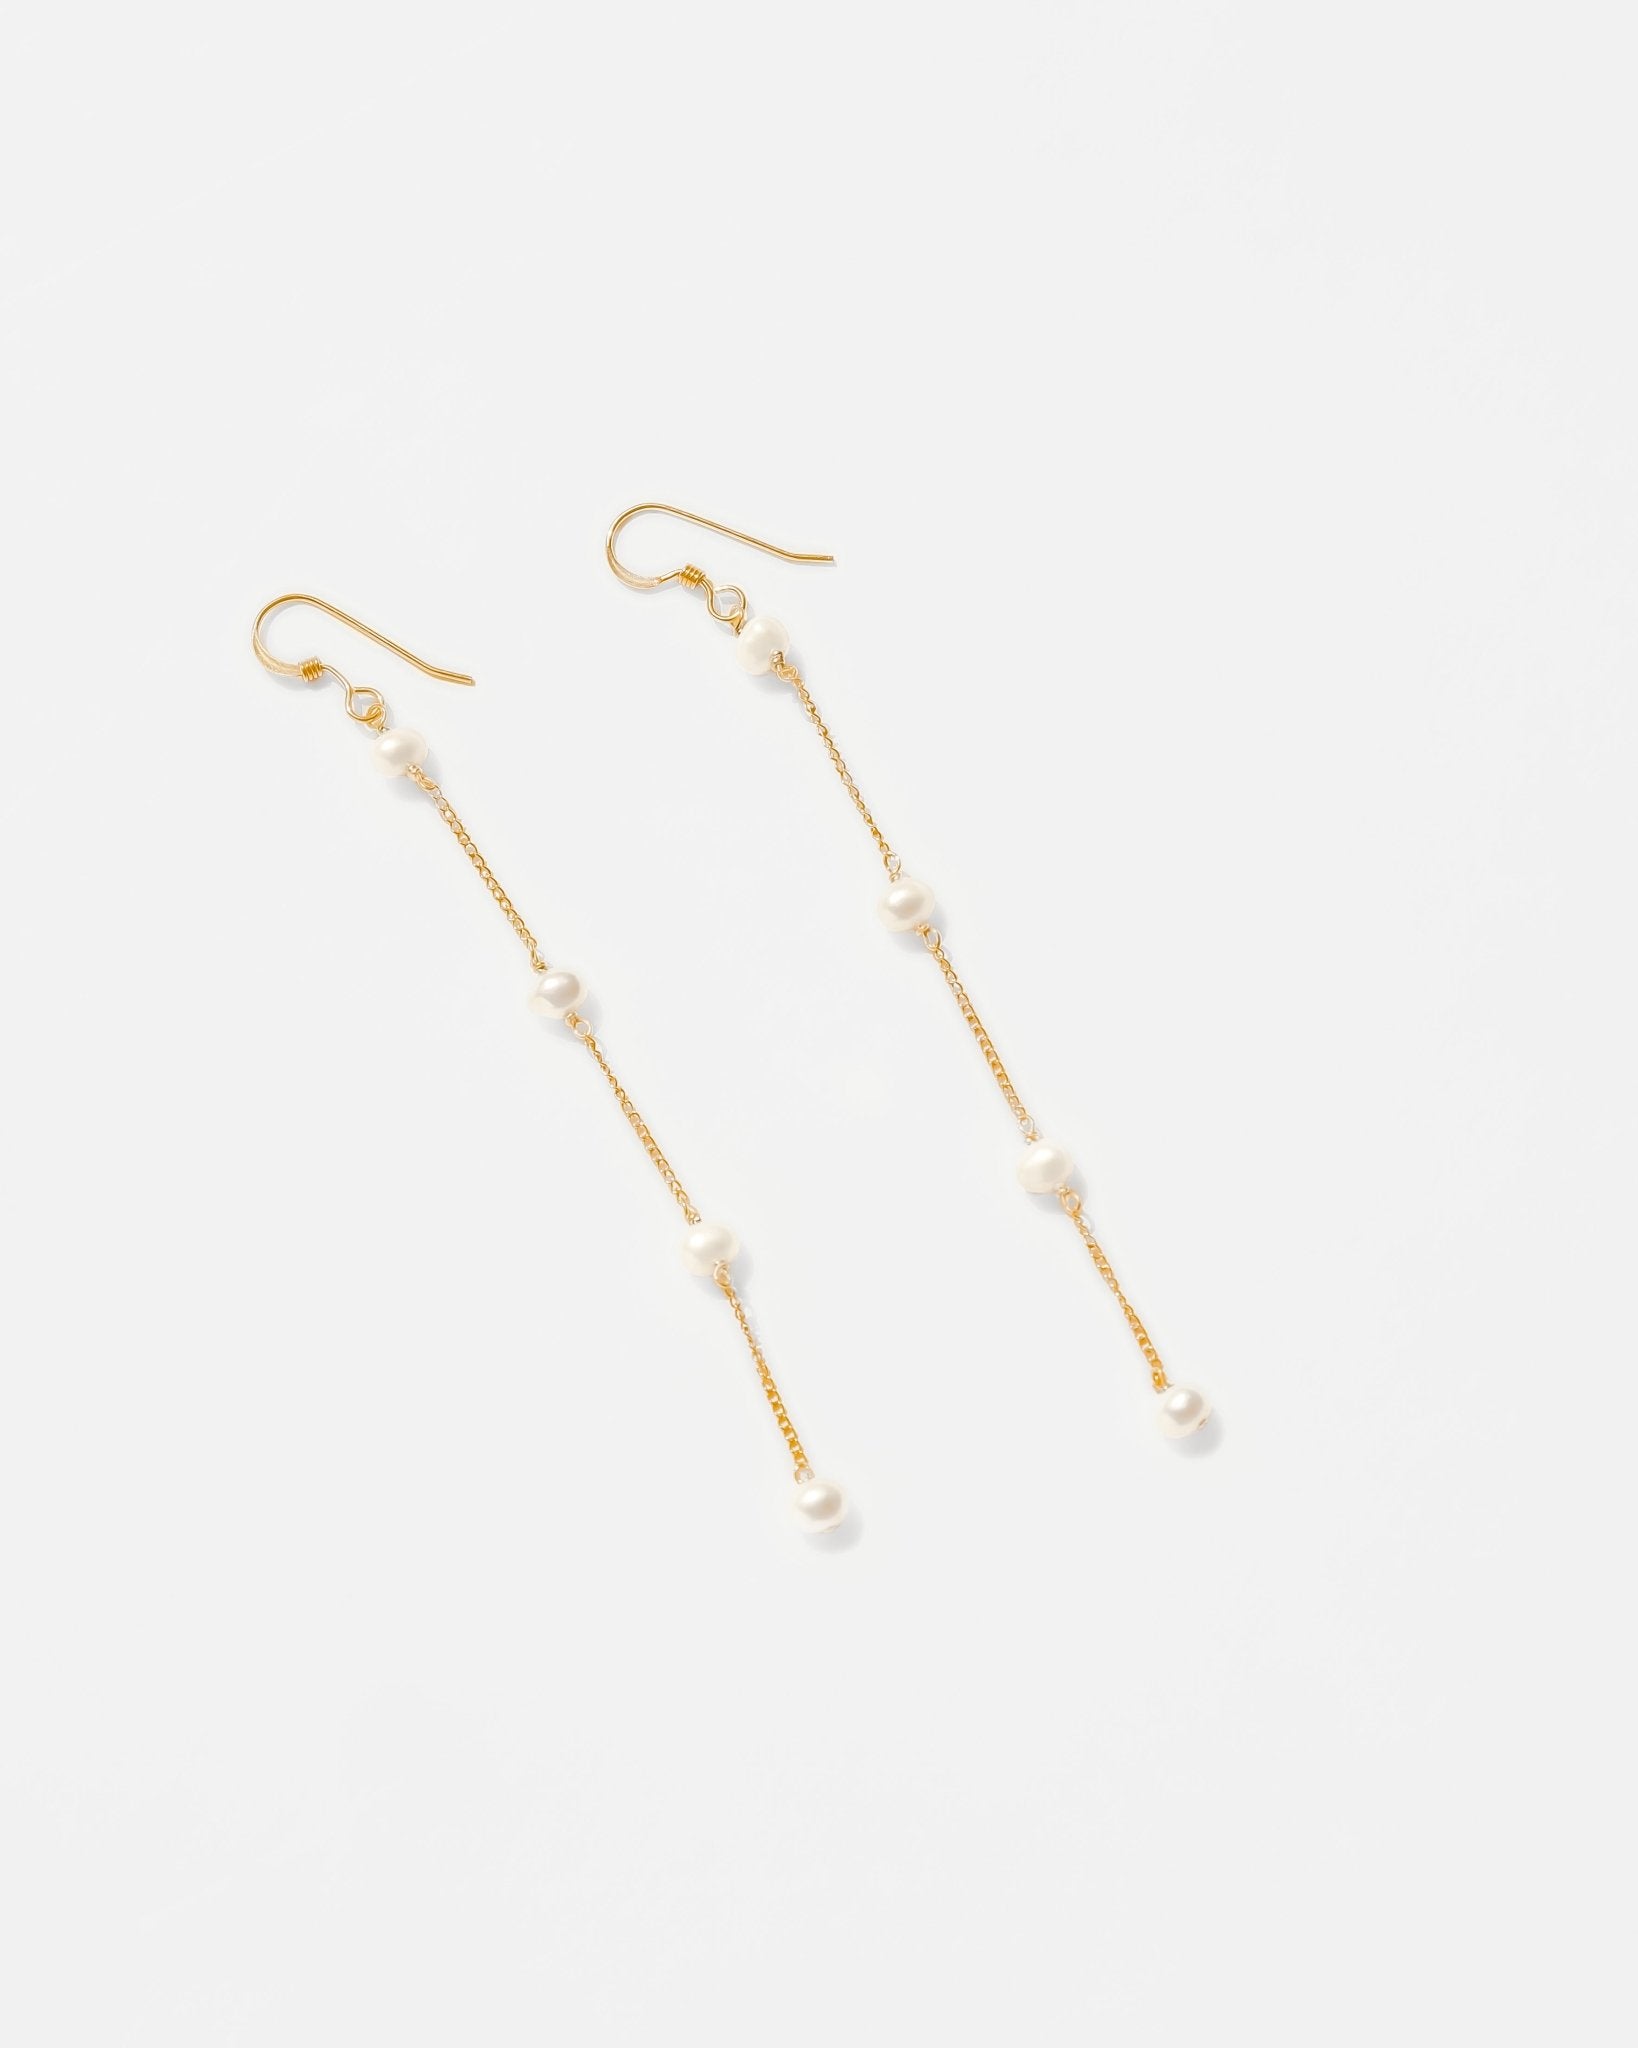 Tiffany HardWear double long link earrings in 18k gold. | Tiffany & Co.